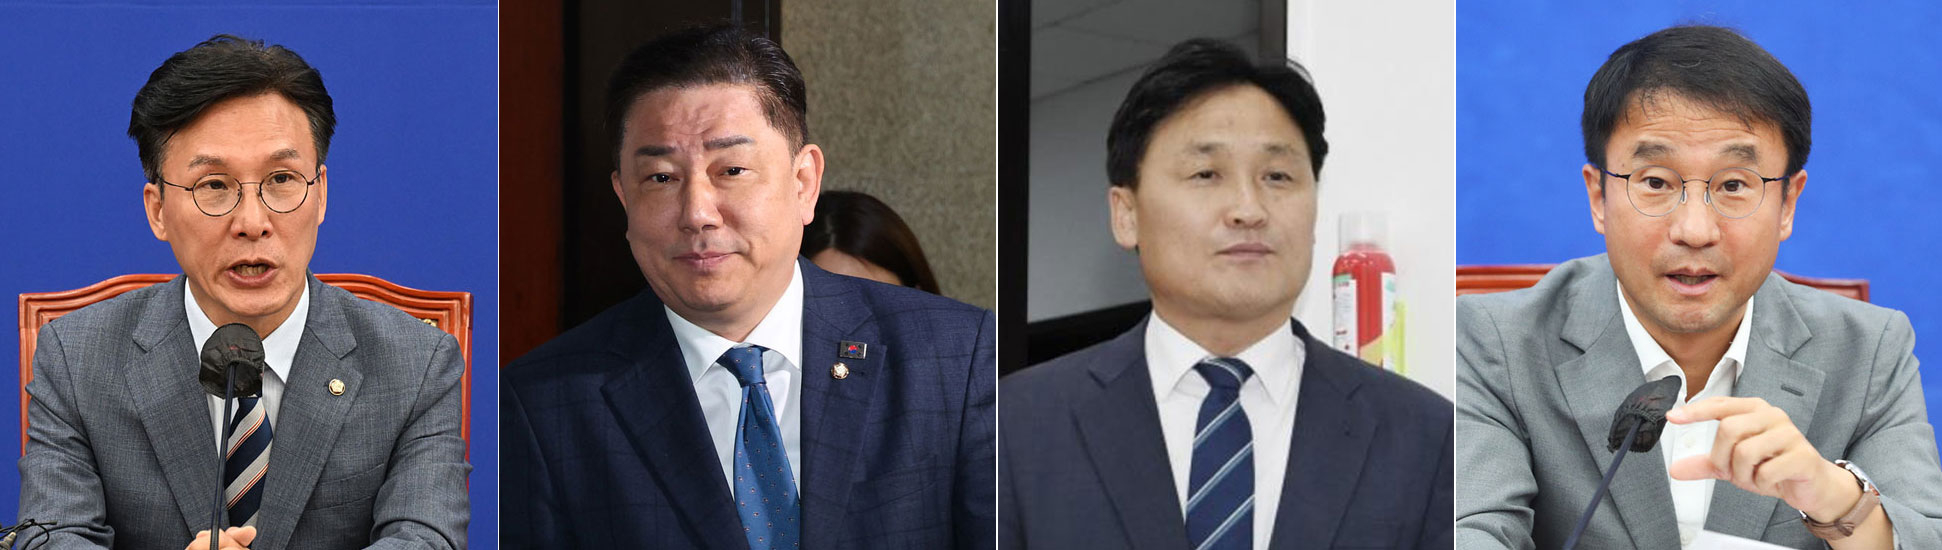 왼쪽부터 김민석-김병기-김영진-한병도 의원